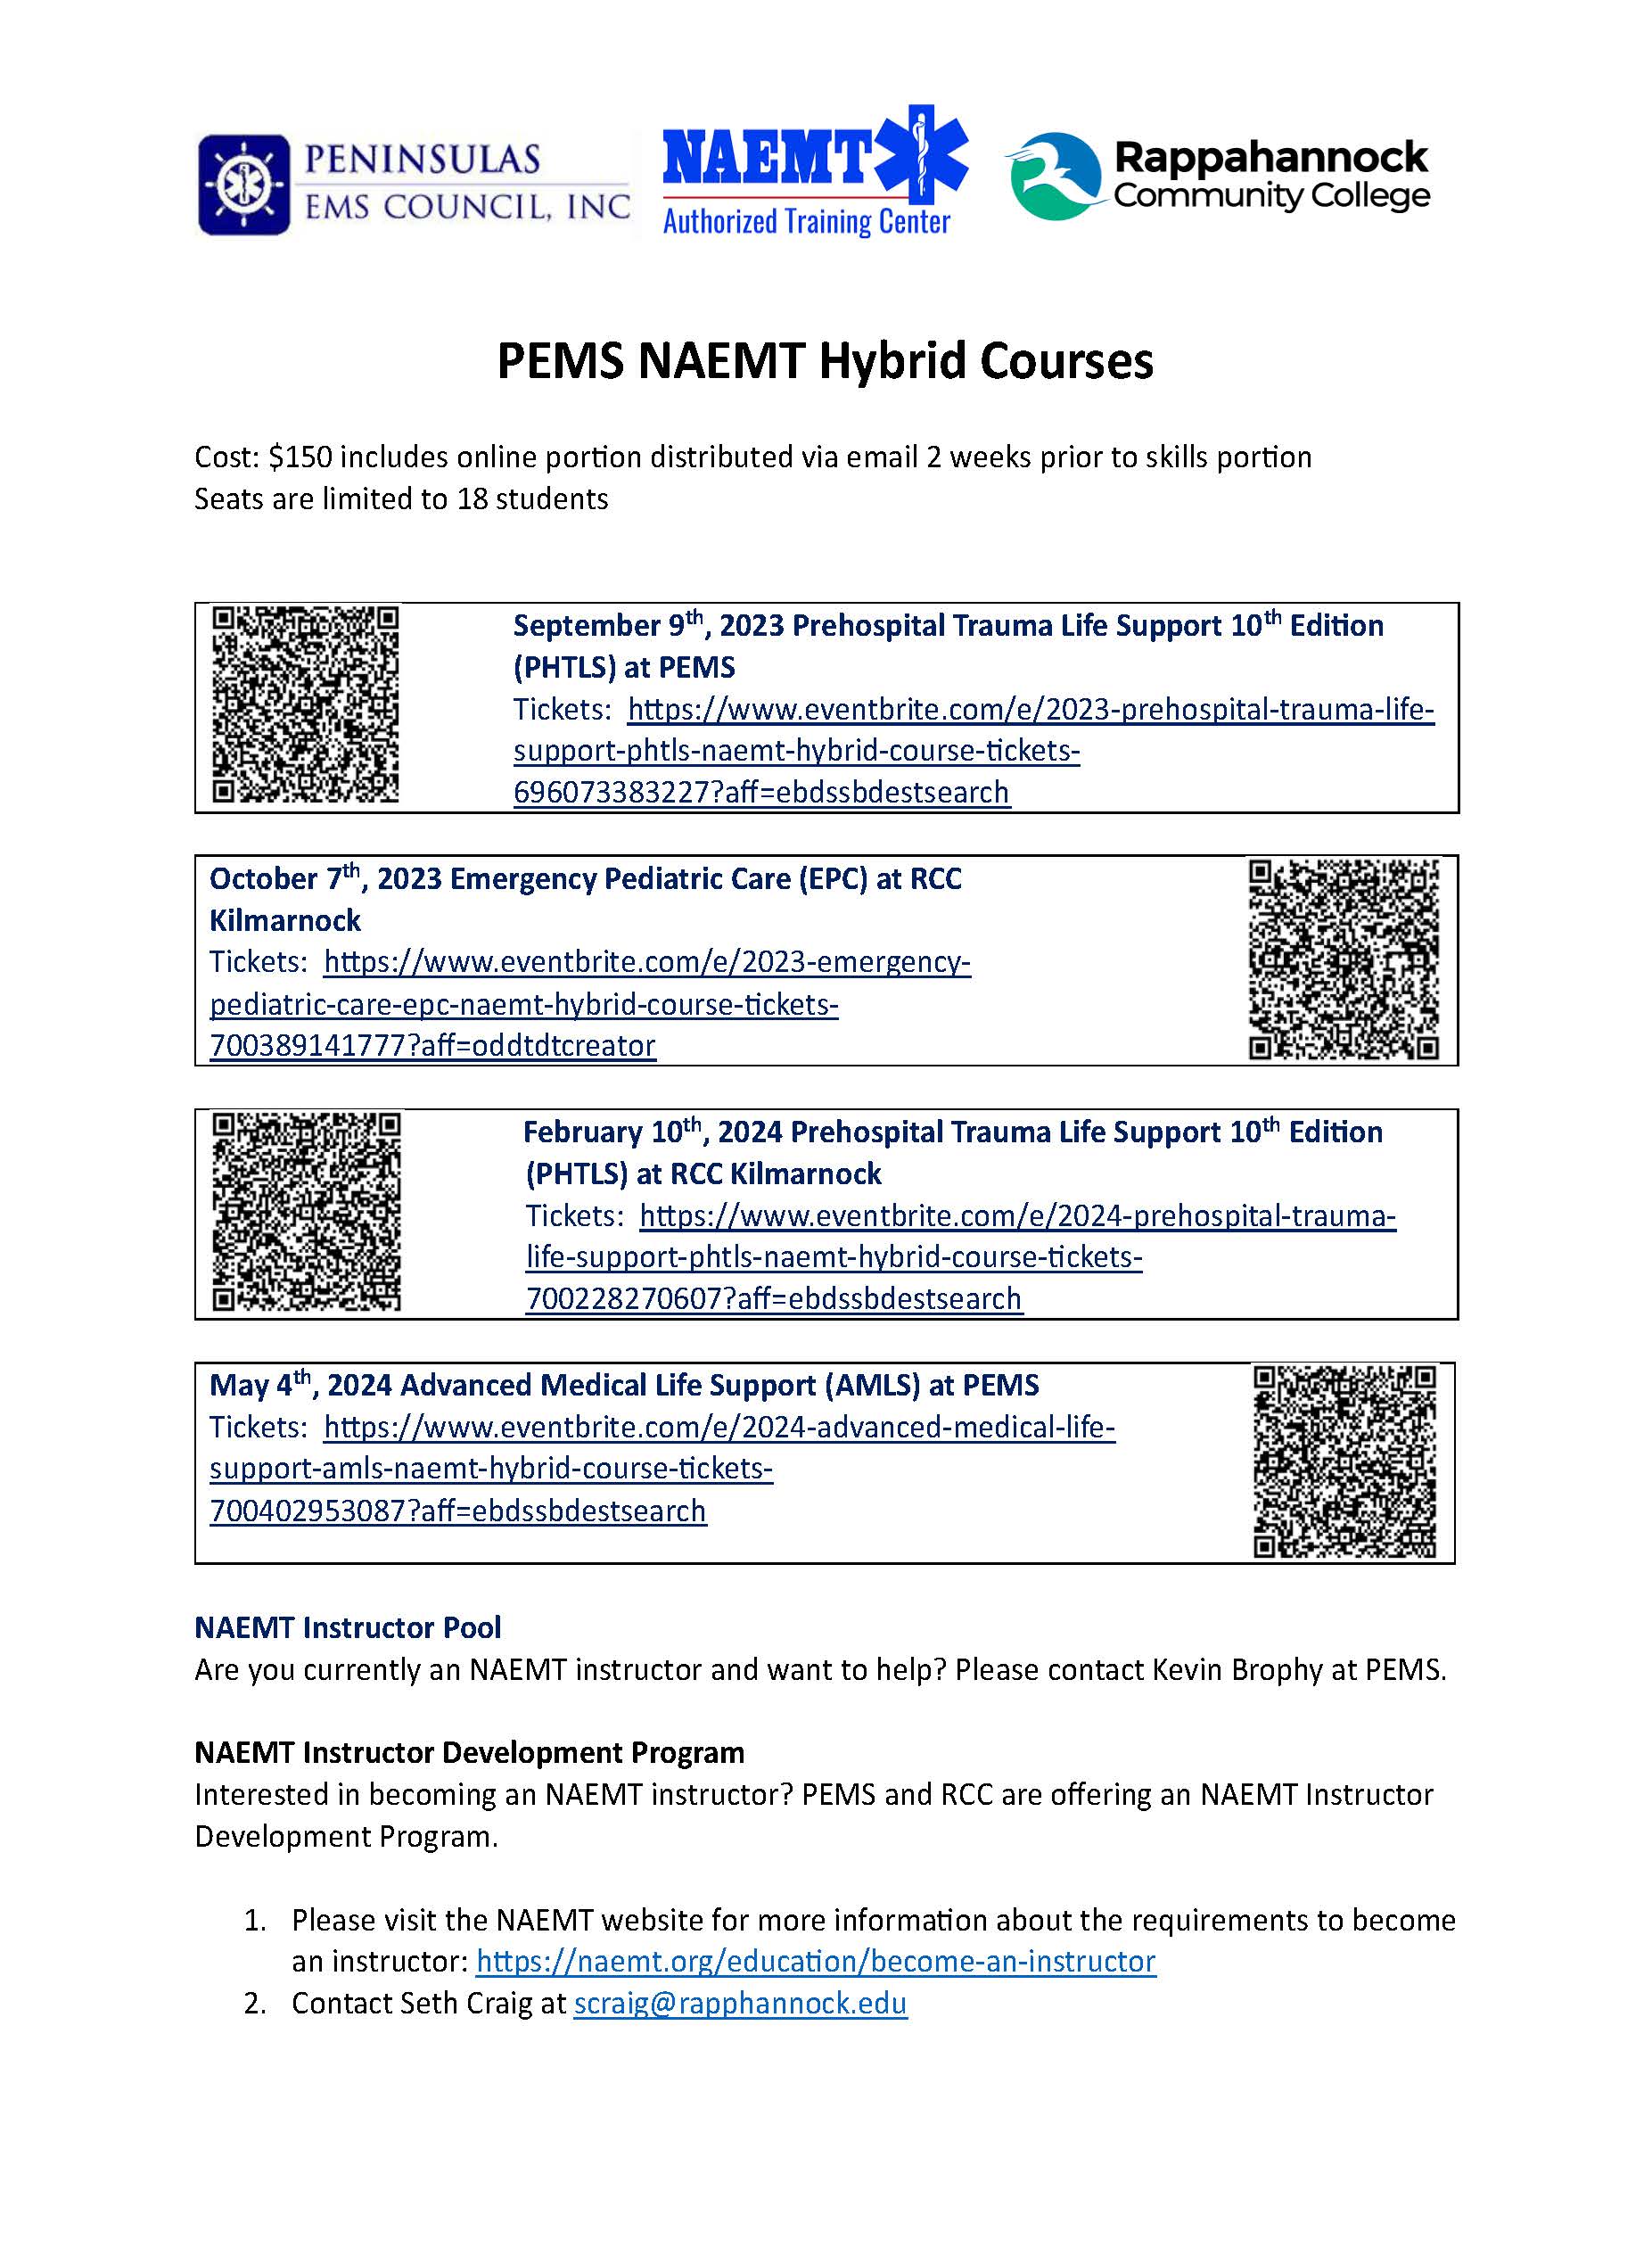 PEMS RCC NAEMT Courses FY24